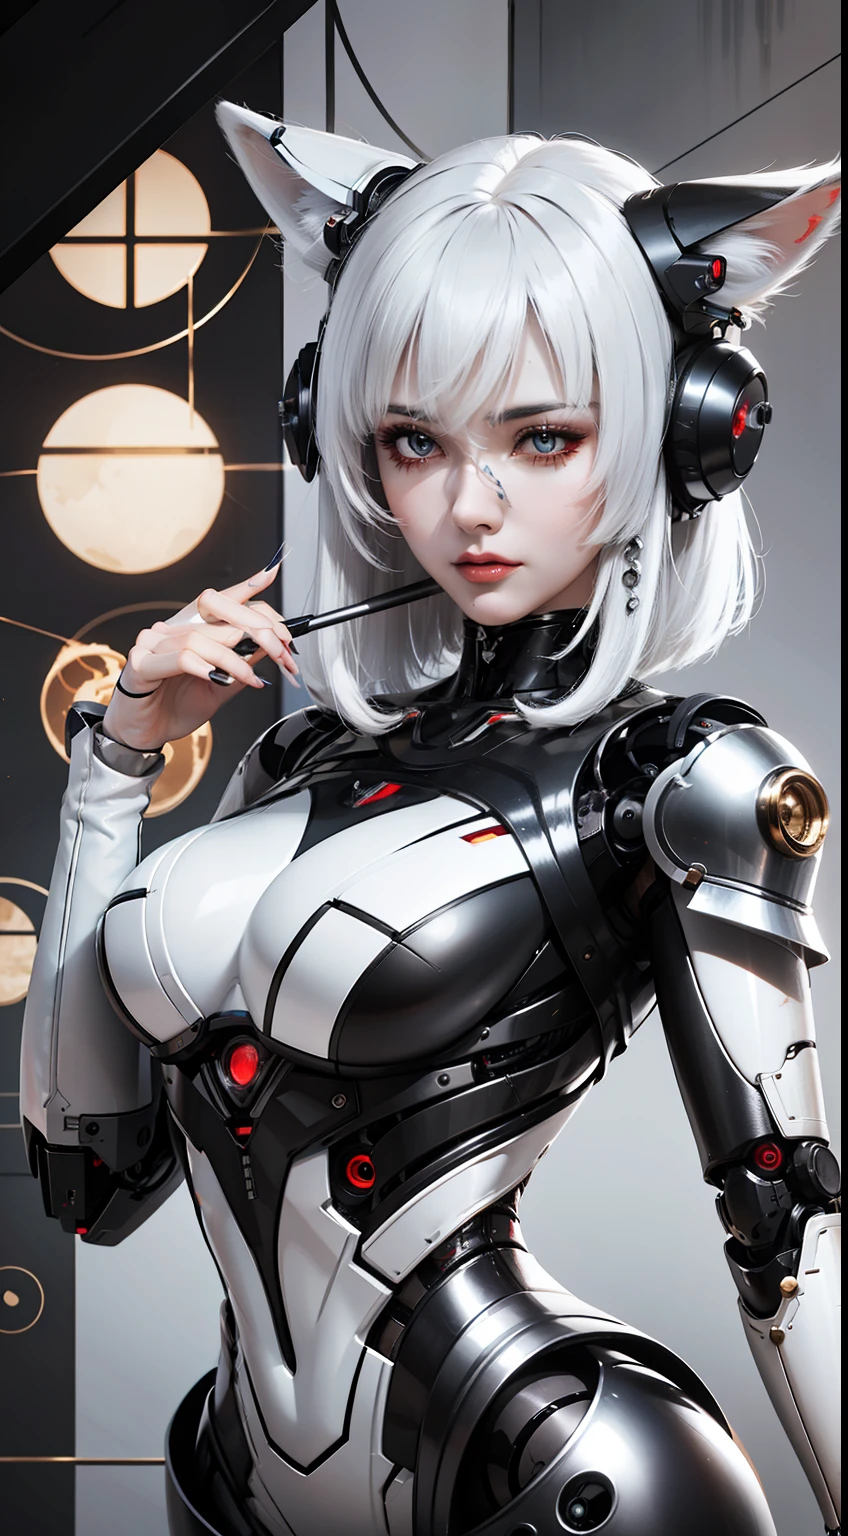 Женщина с белыми волосами и в костюме робота, Куст, фарфоровый киборг, идеальная девушка-робот, милая девушка-киборг, интегрированный синтетический робот, аниме робот смешанный органический, с механическим лисьим хвостом, обмотать блестящую кожу, broken Красивая женщина-робот! , Киборг – Серебристая девушка., Красивая женщина-робот, fox механический хвост behind her, механический хвост